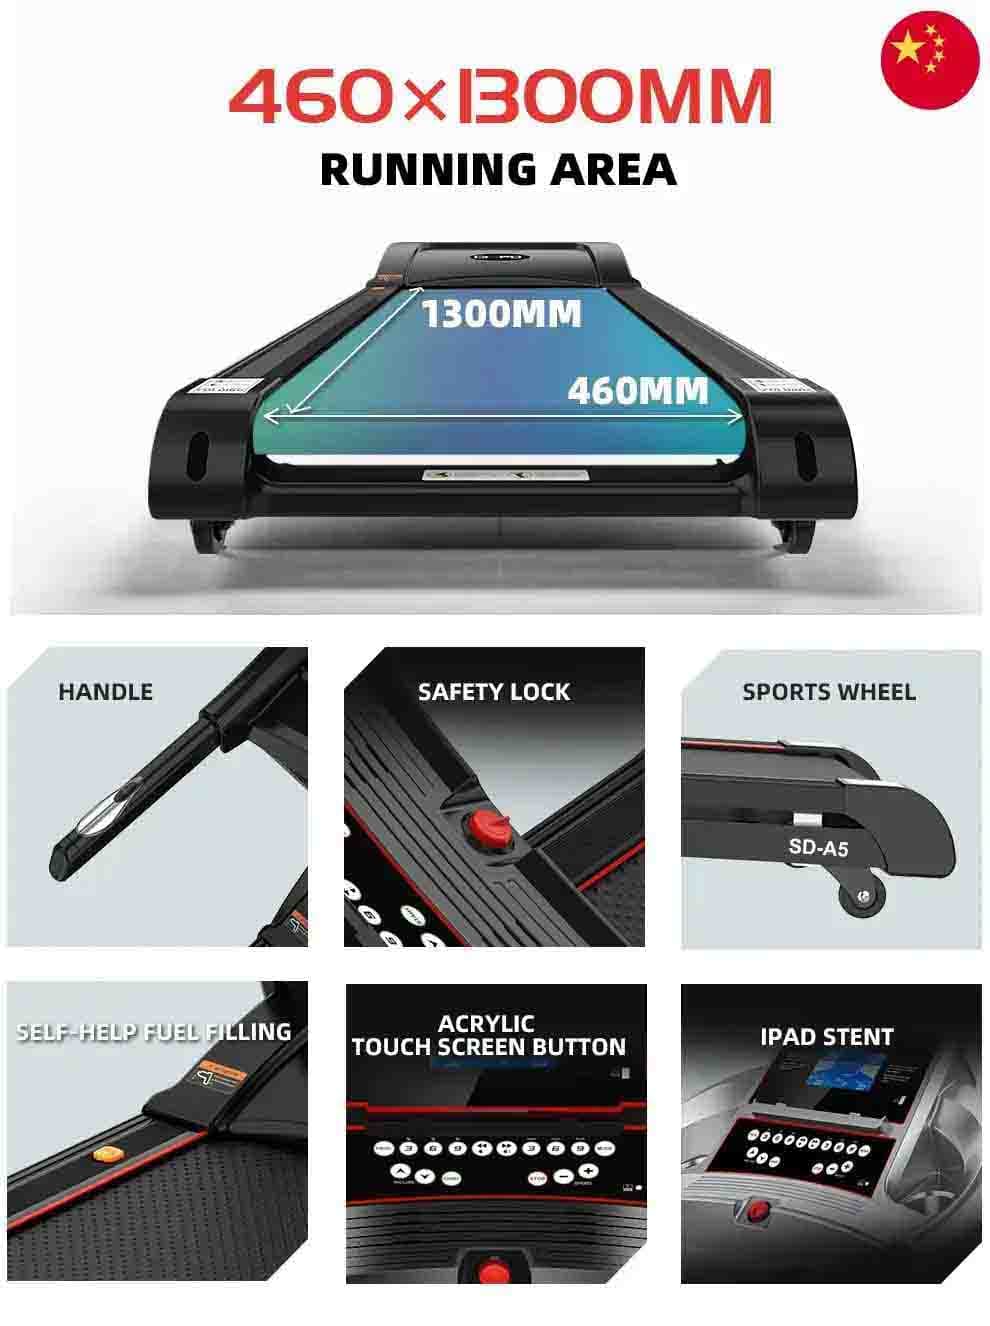 home treadmill - SD-A5 - detail3